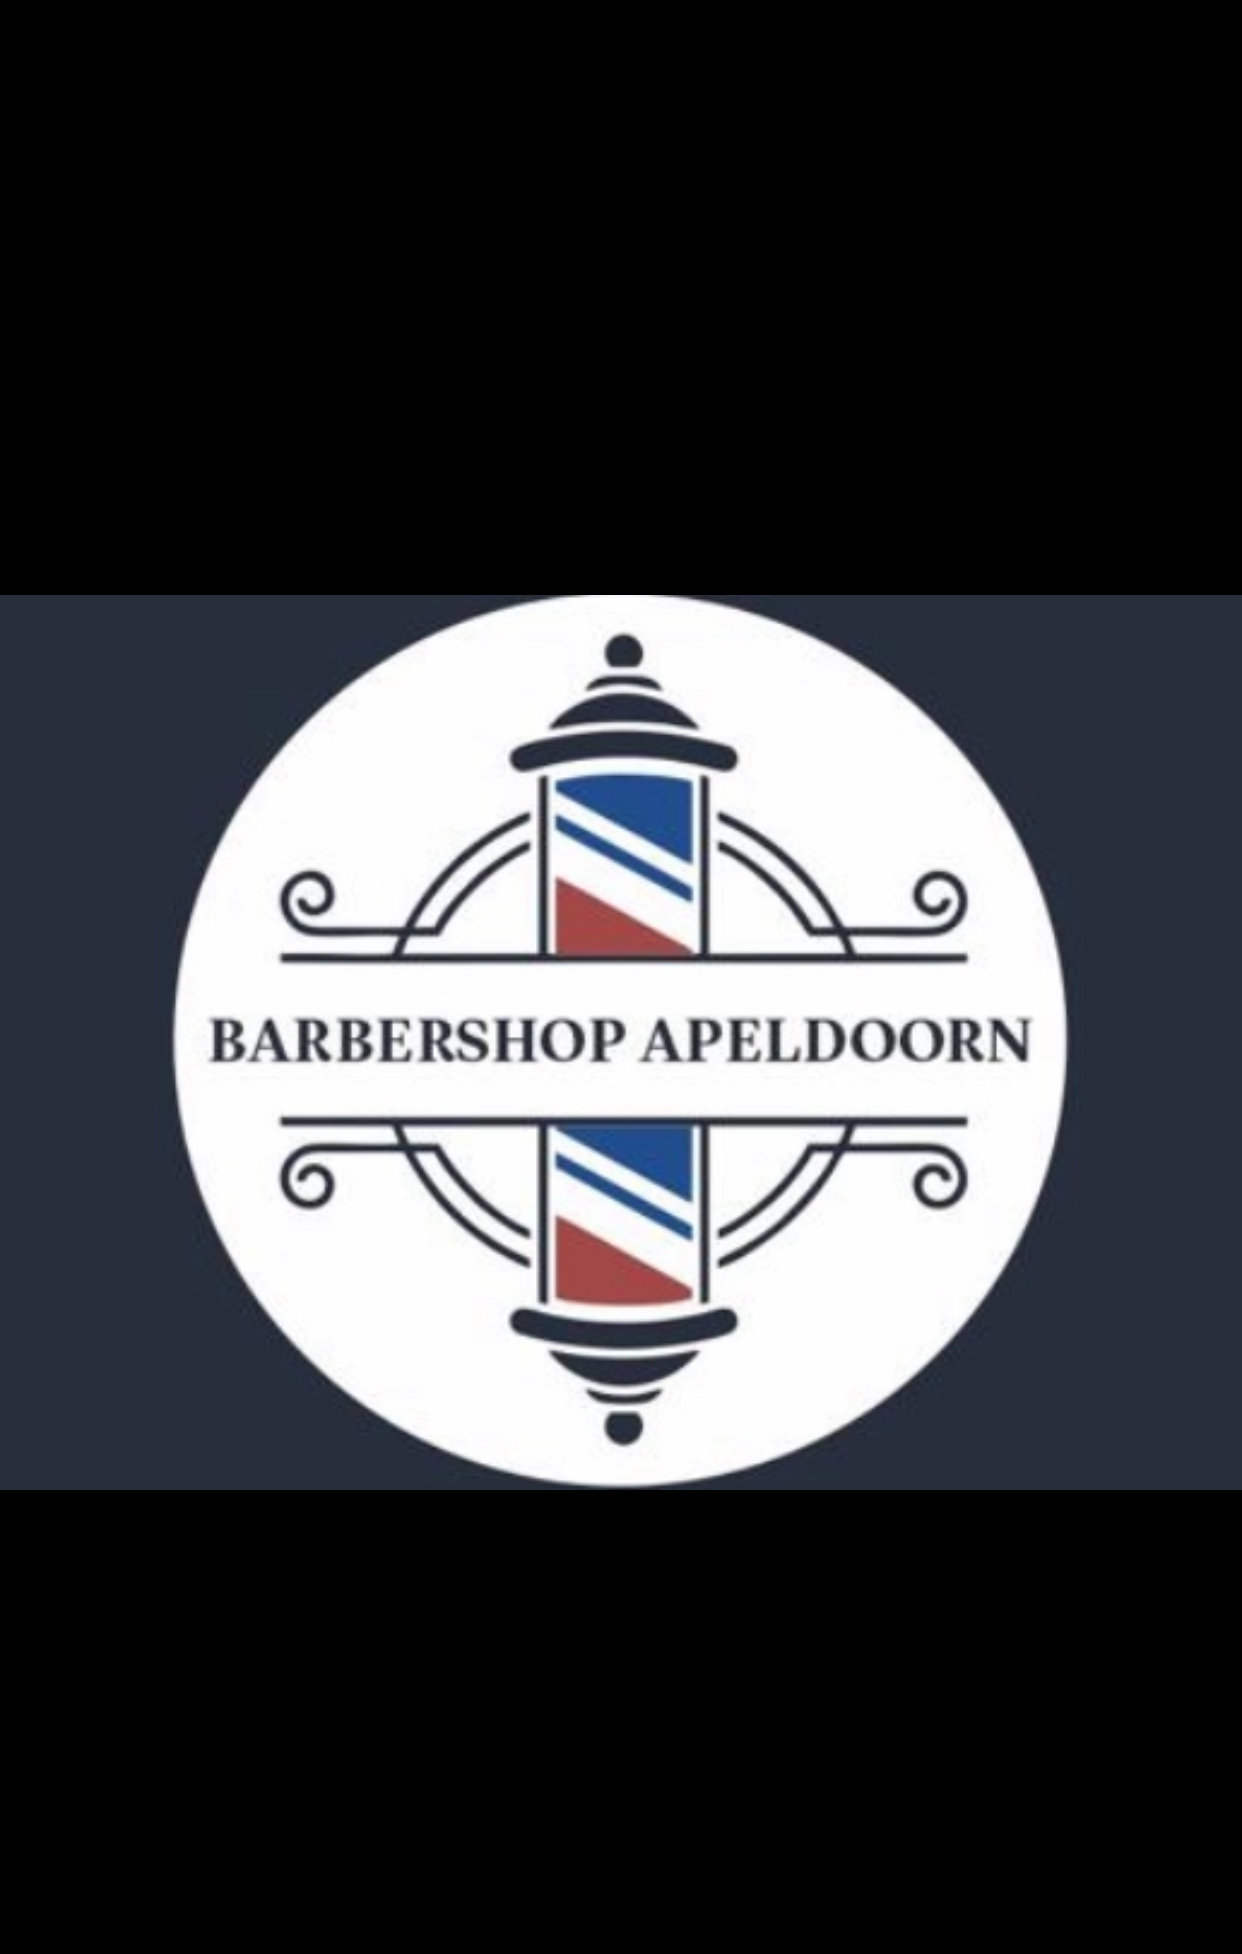 Barbershop Apeldoorn